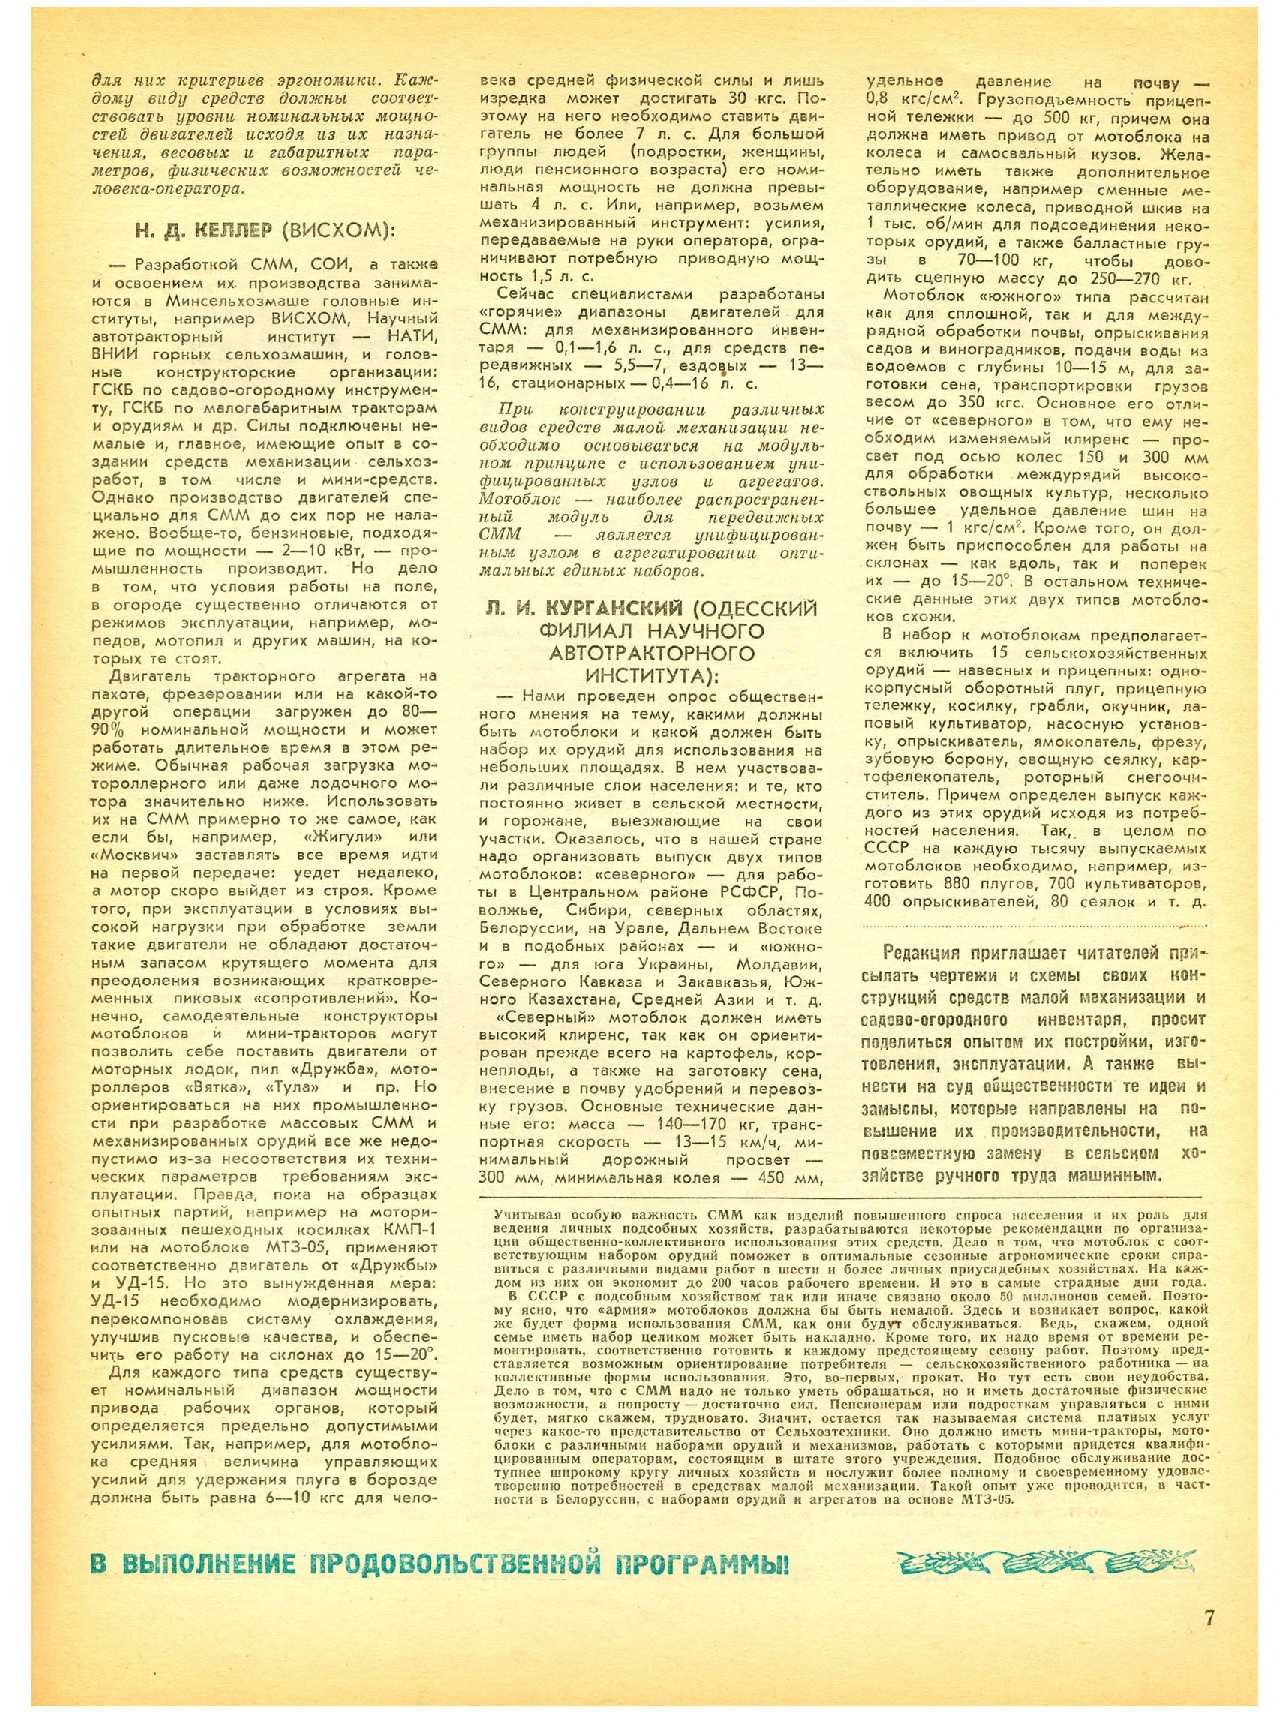 МК 8, 1982, 7 c.